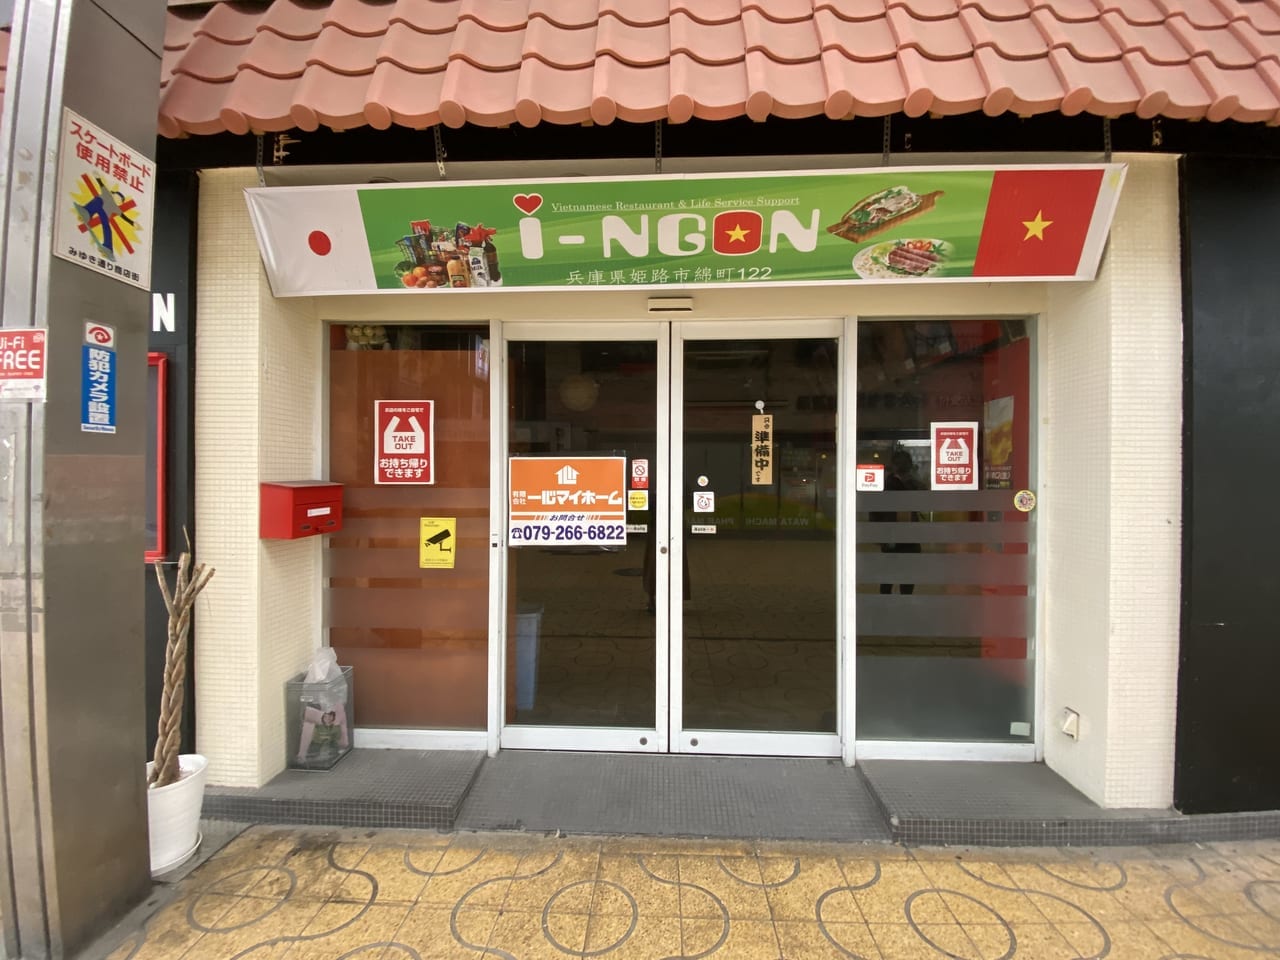 i-NGON 姫路店